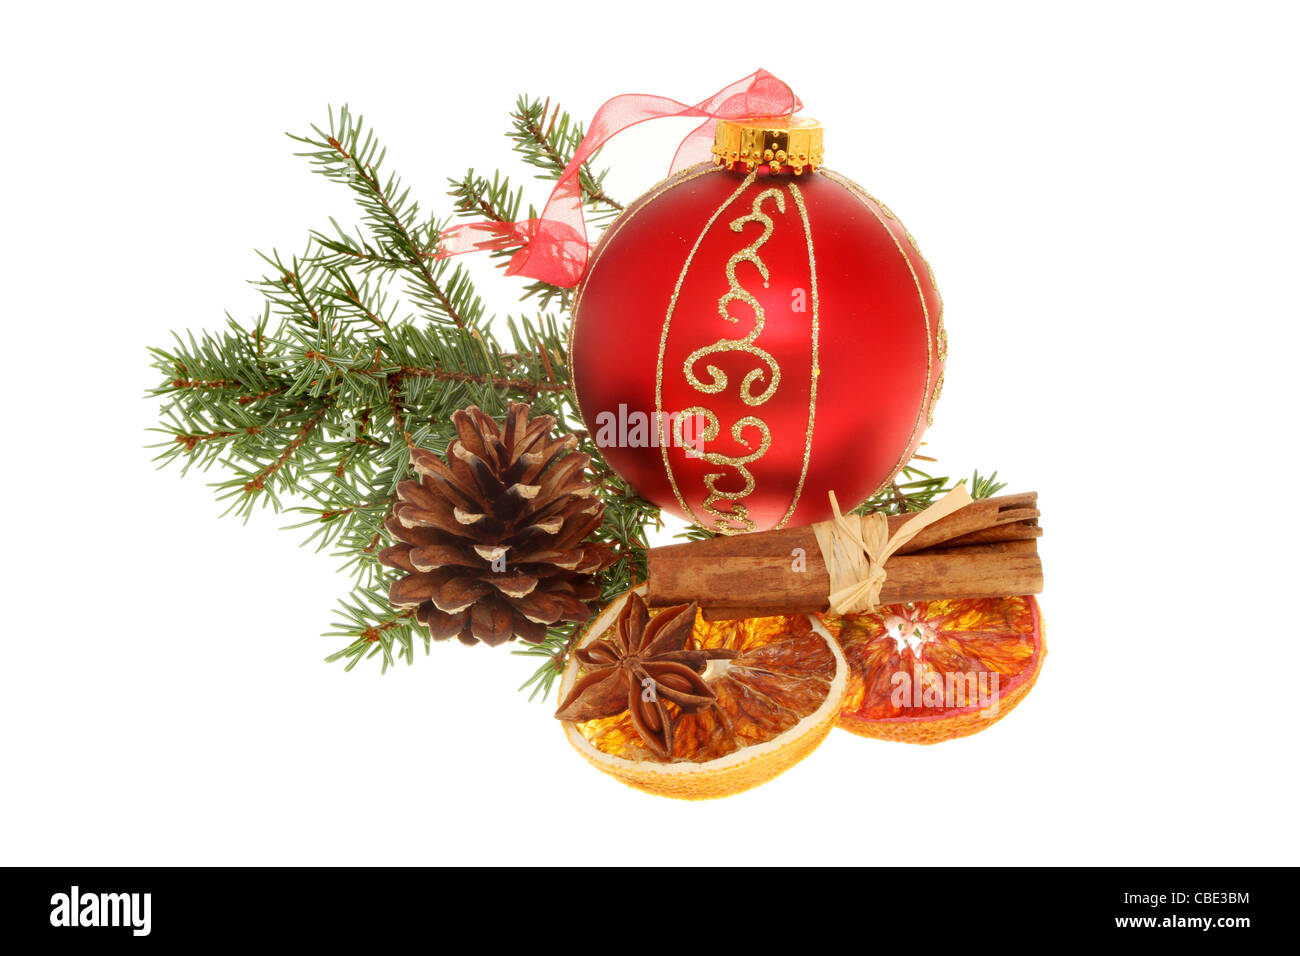 Décoration de Noël, de l'or et babiole rouge, orange cannelle, pomme séchée et de feuillage Banque D'Images